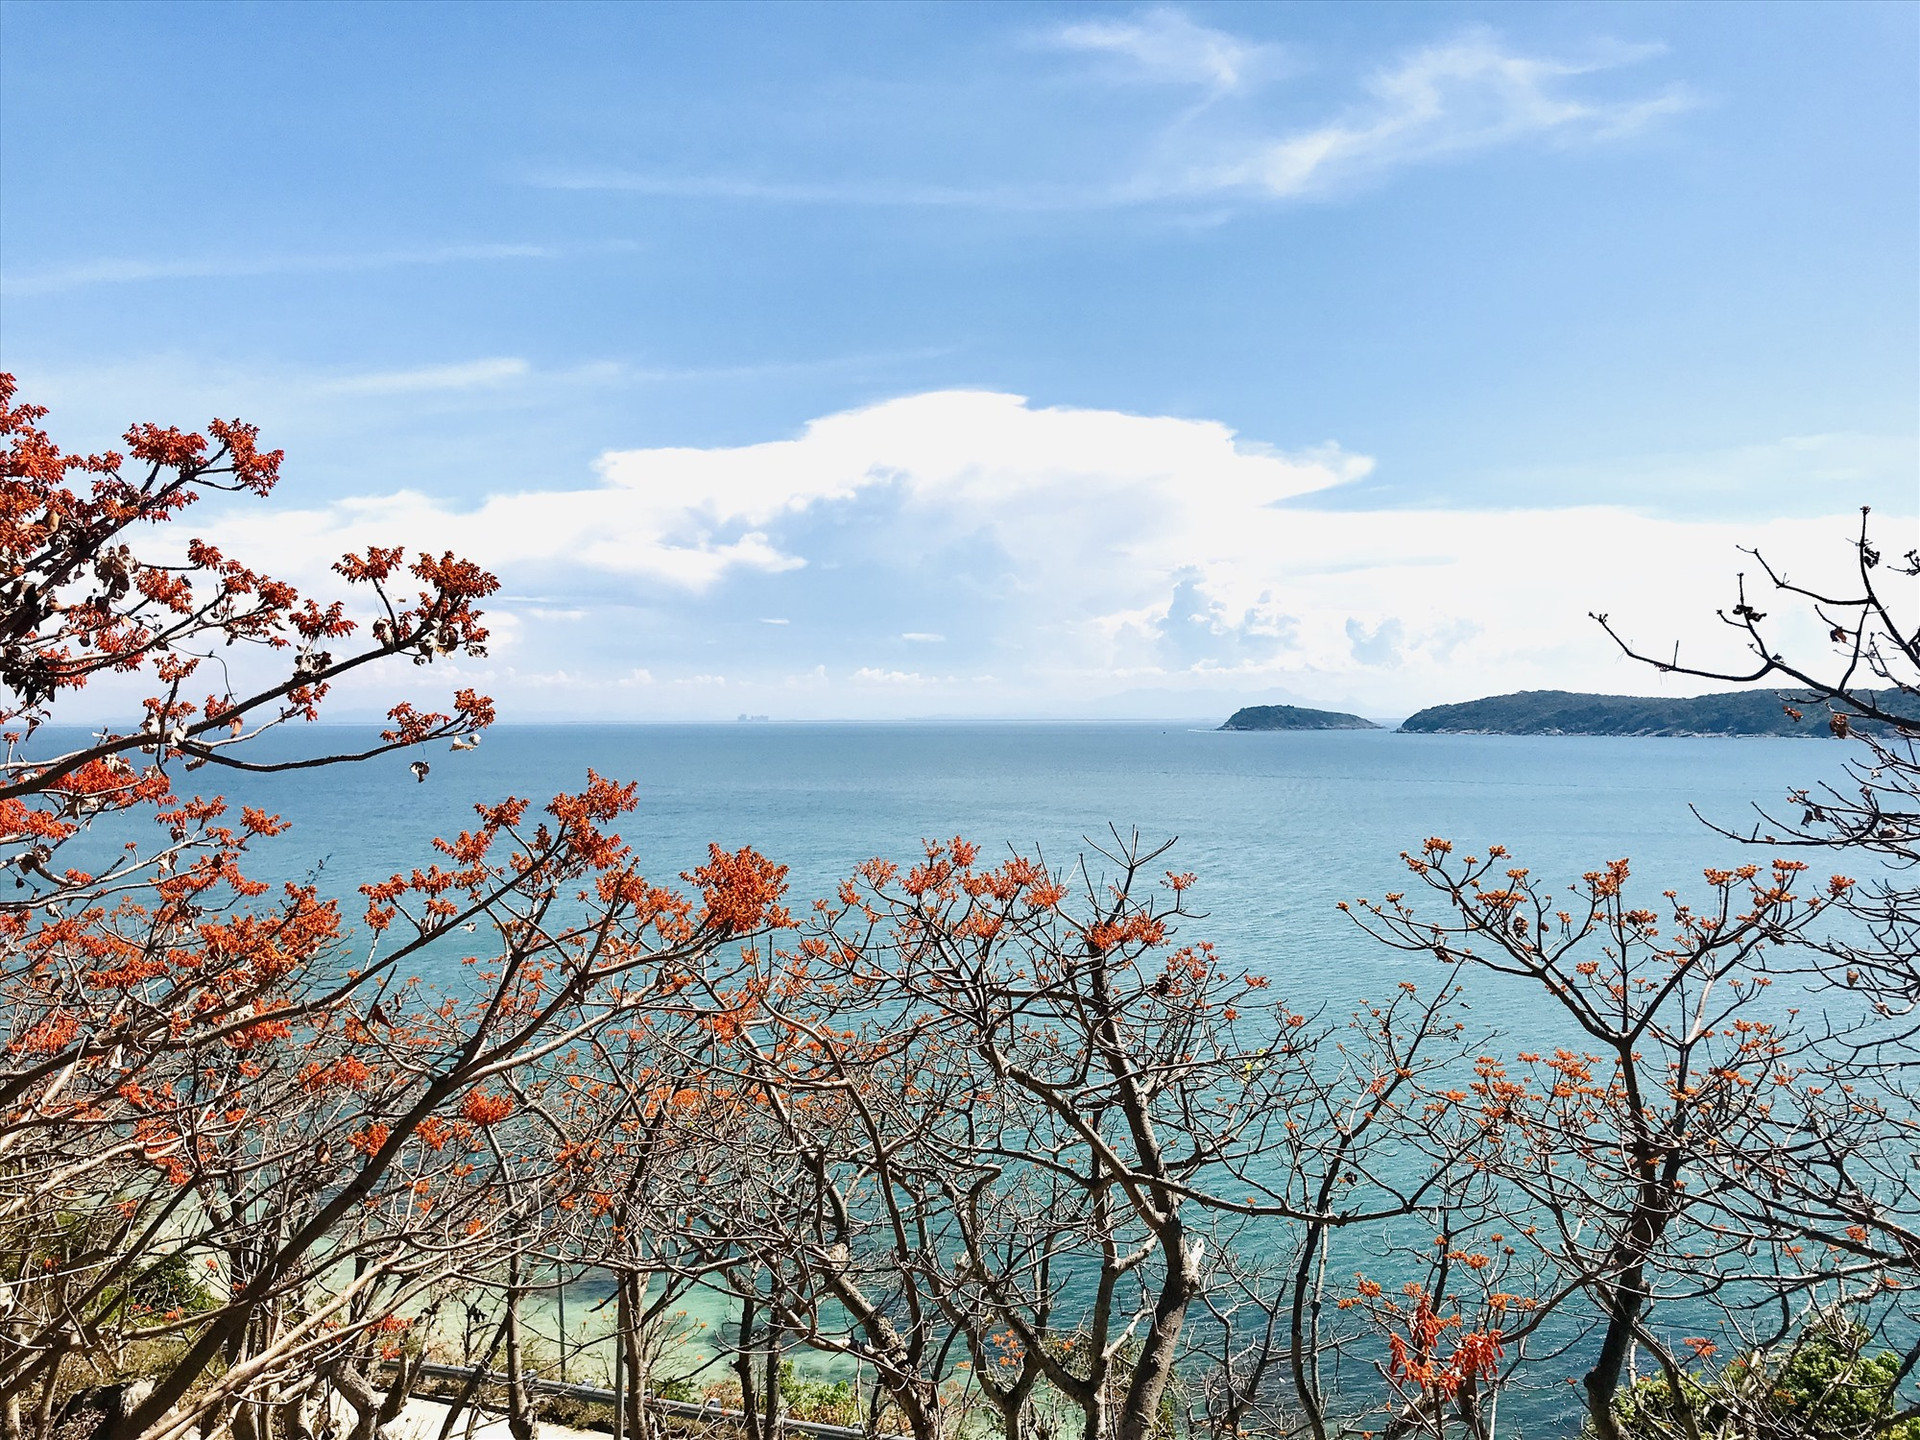 Quảng Nam là địa phương có tiềm năng lớn thúc đẩy du lịch biển theo hướng cao cấp.Ảnh: Q.T